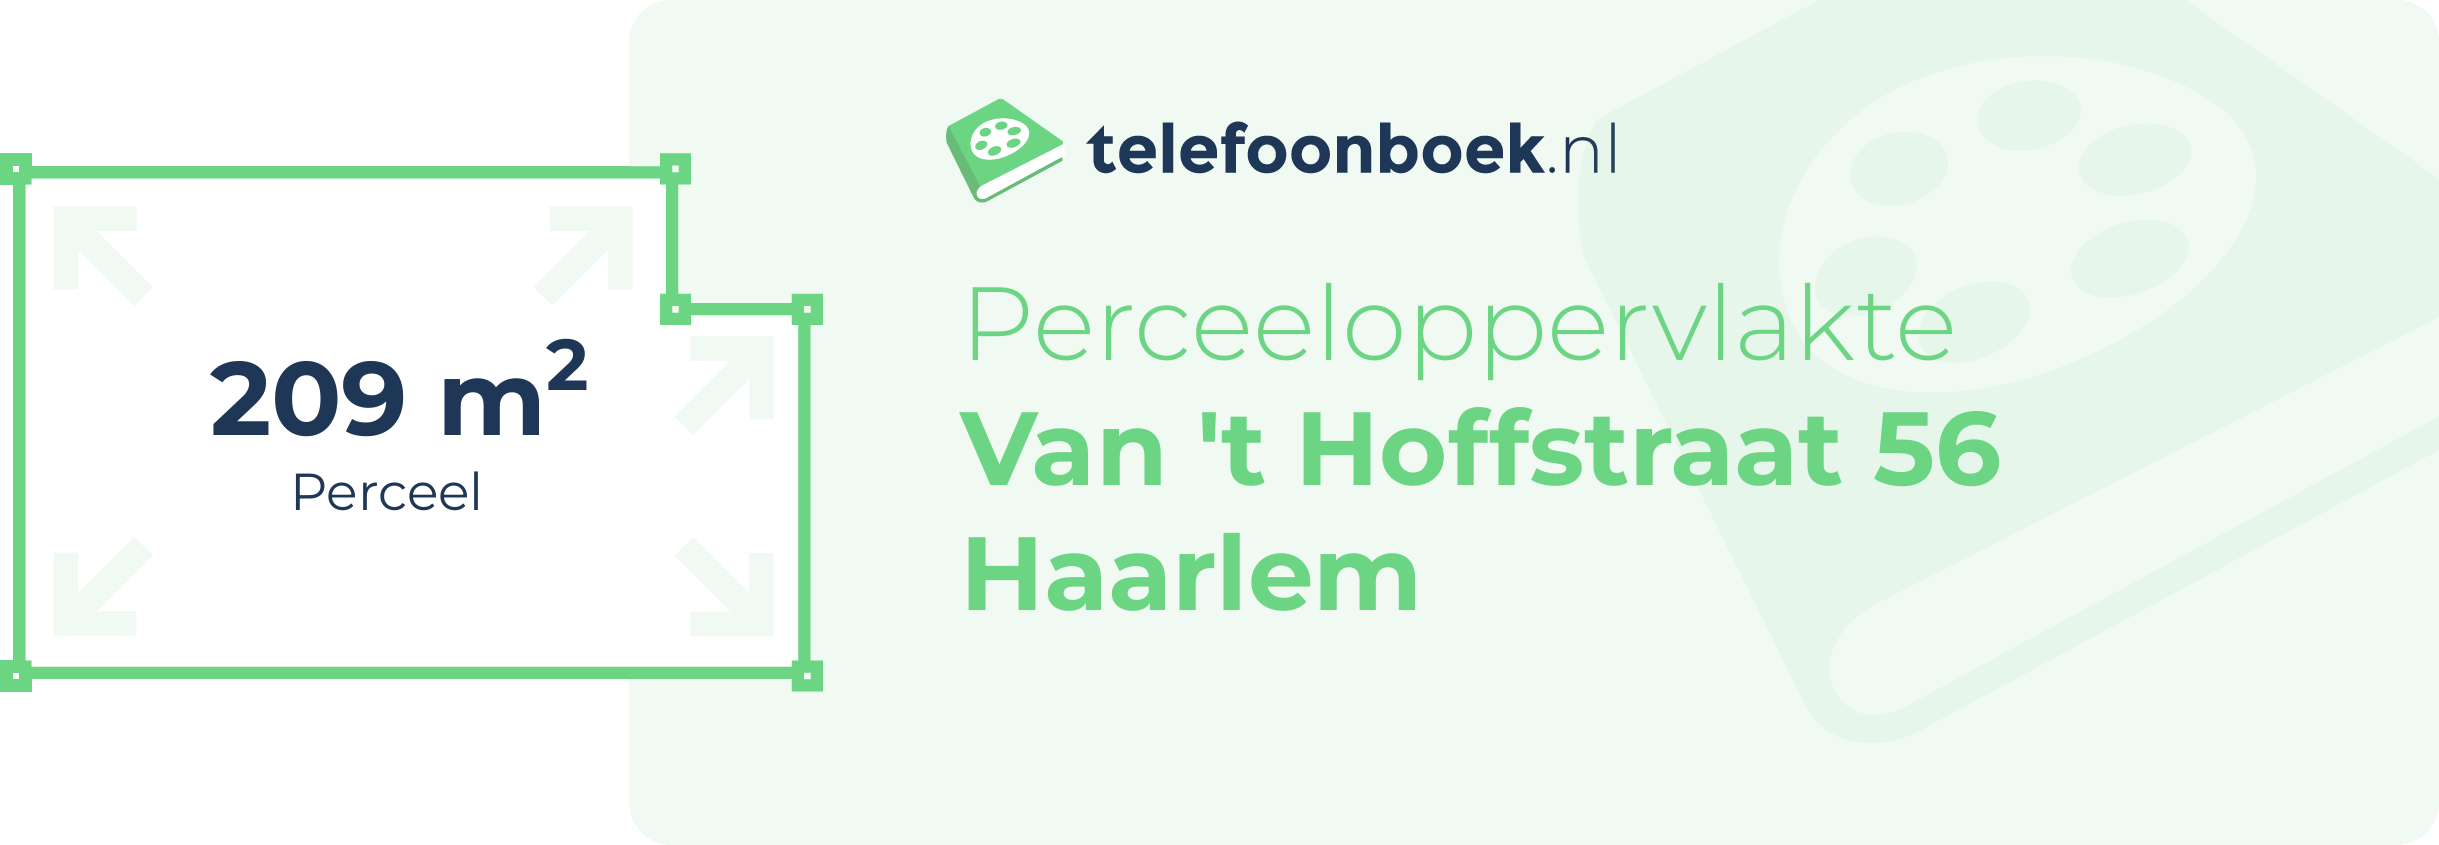 Perceeloppervlakte Van 't Hoffstraat 56 Haarlem